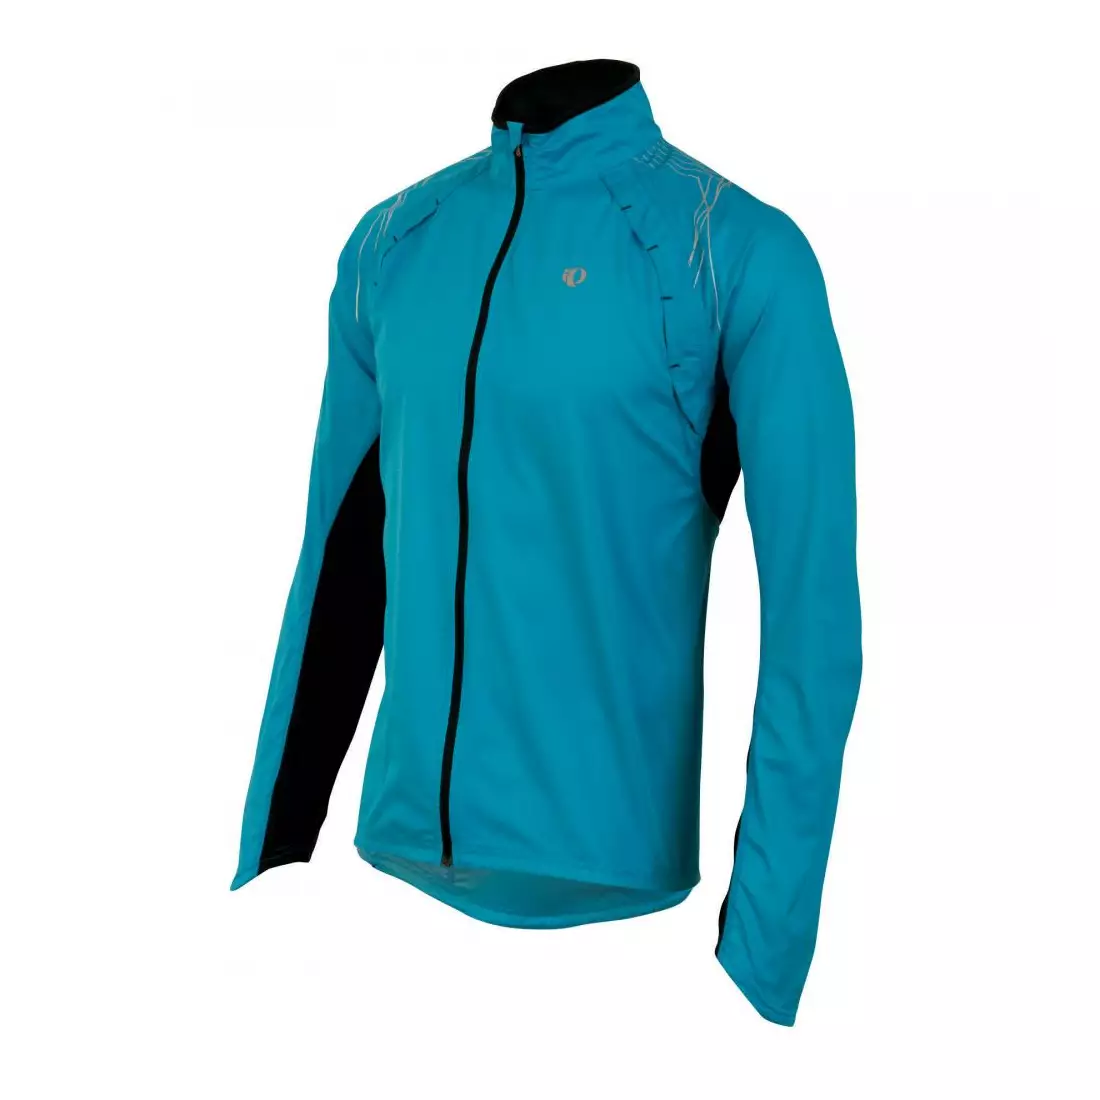 PEARL IZUMI - ELITE Infinity Jacket 12131101-3PK - jachetă alergare bărbați, culoare: Albastru